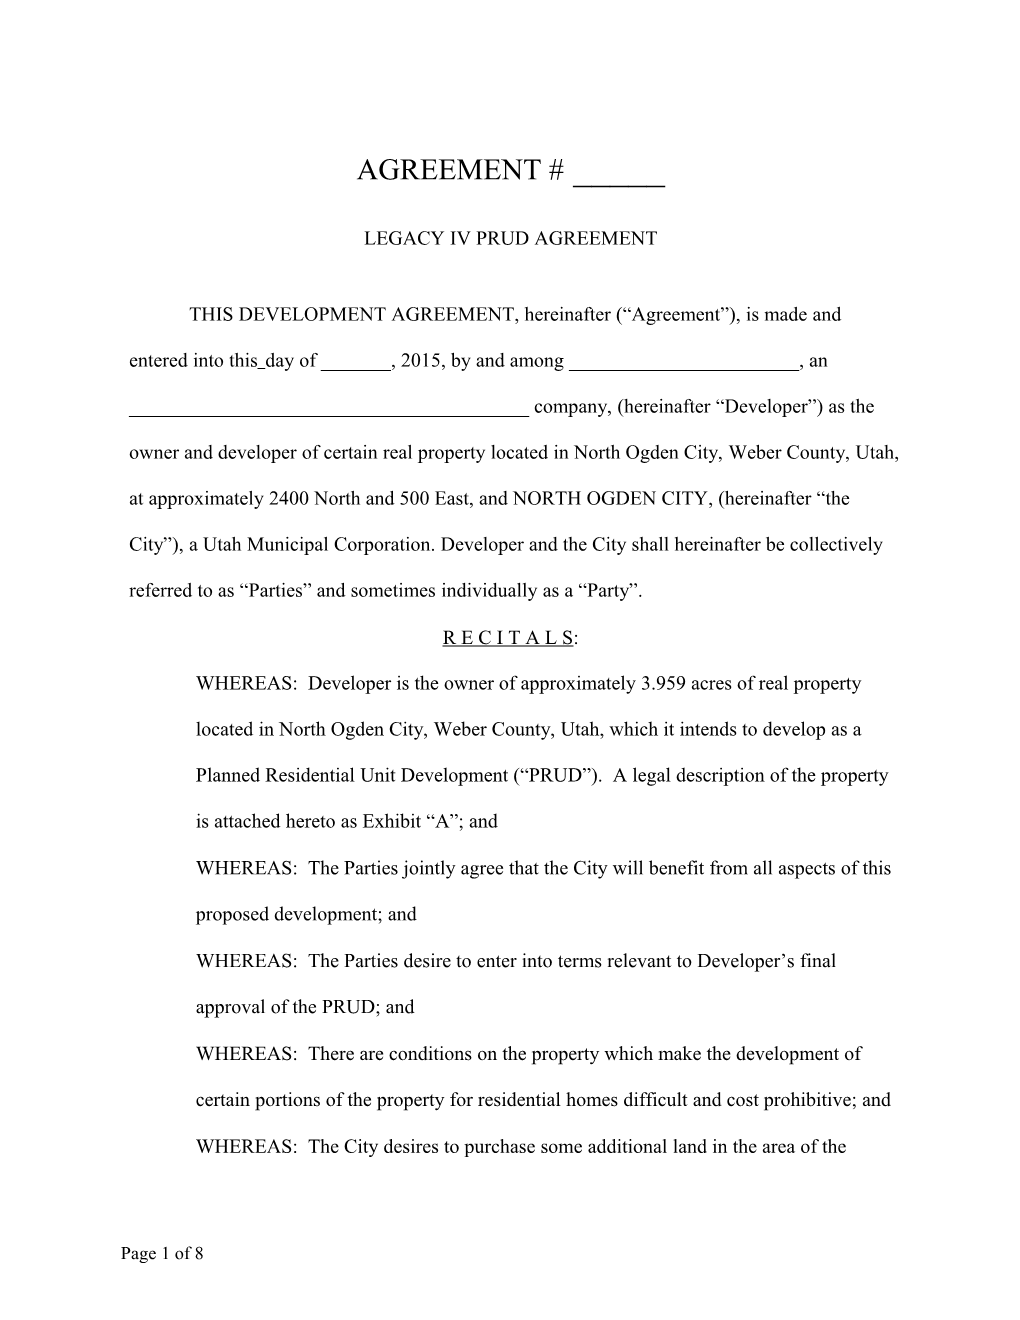 Third Draft) Development Agreement (A0660915